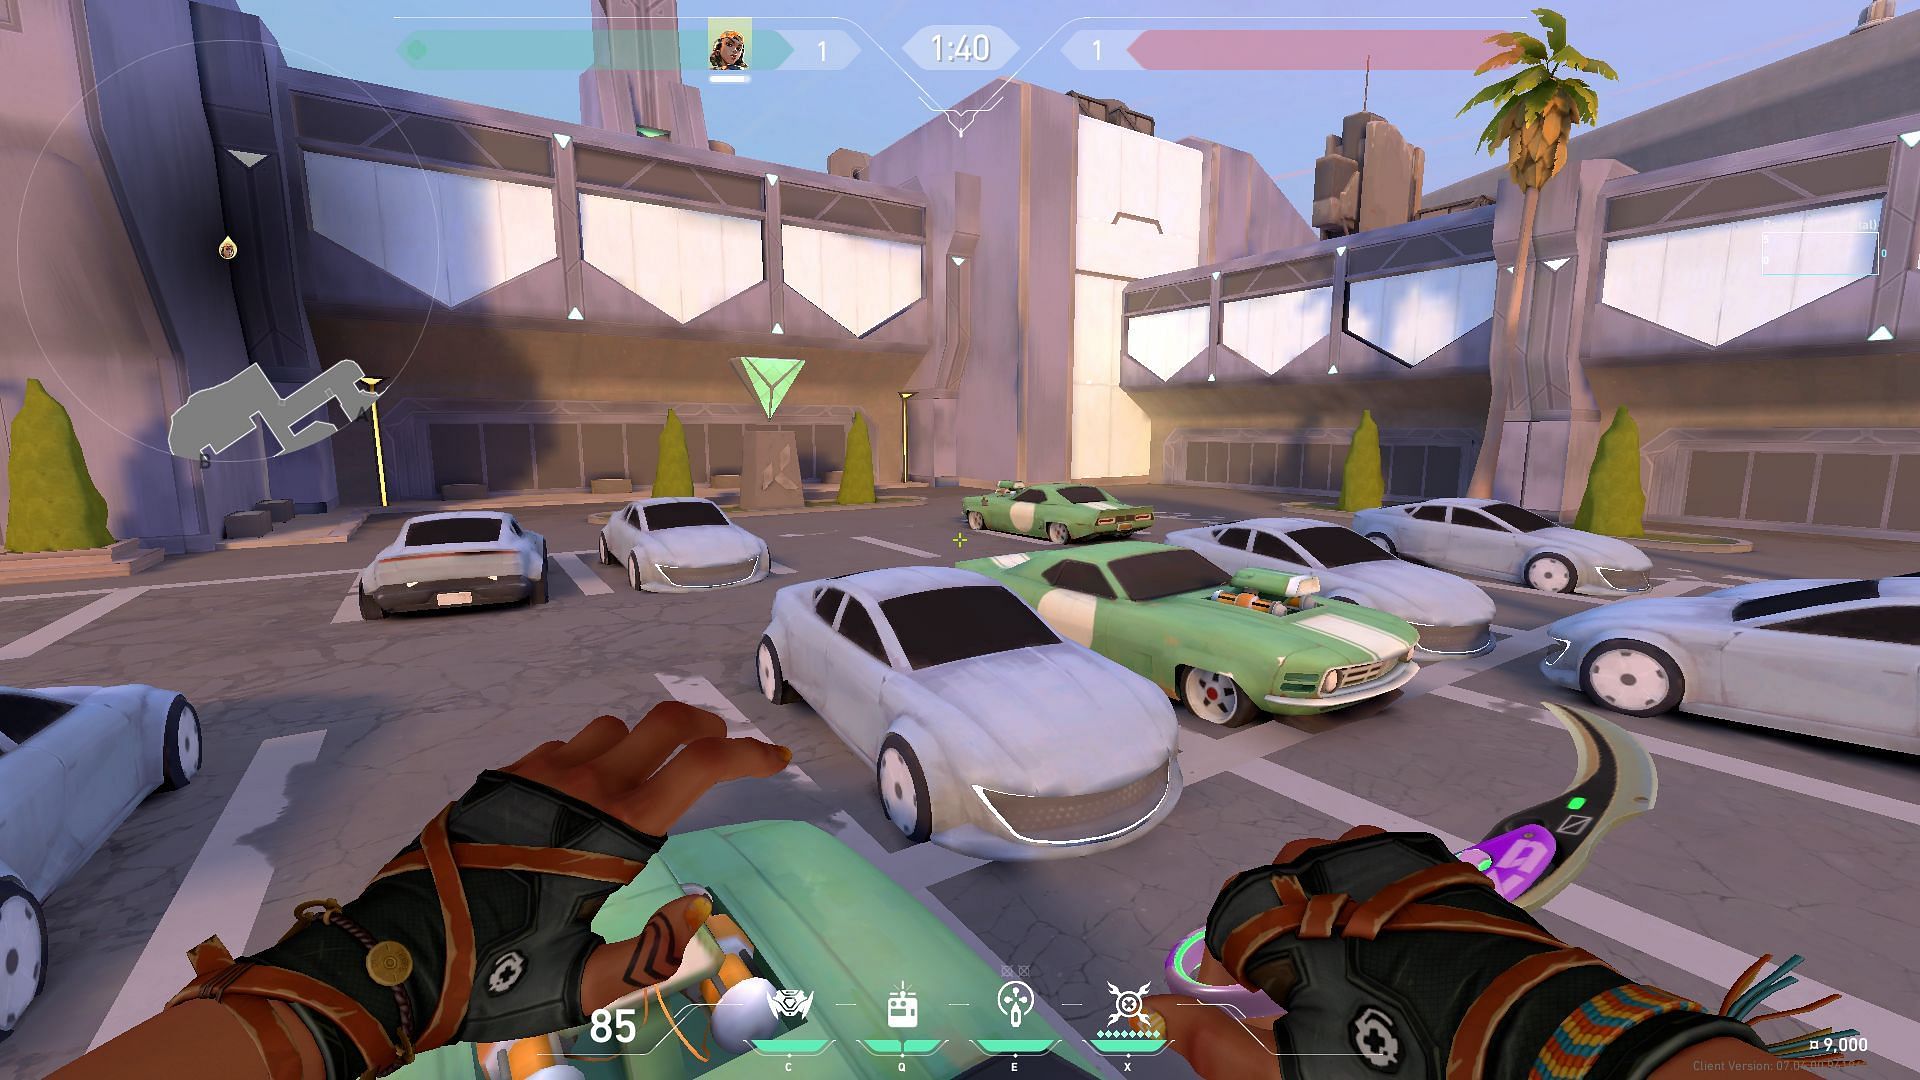 Parking Lot on Sunset (Image via Riot Games)